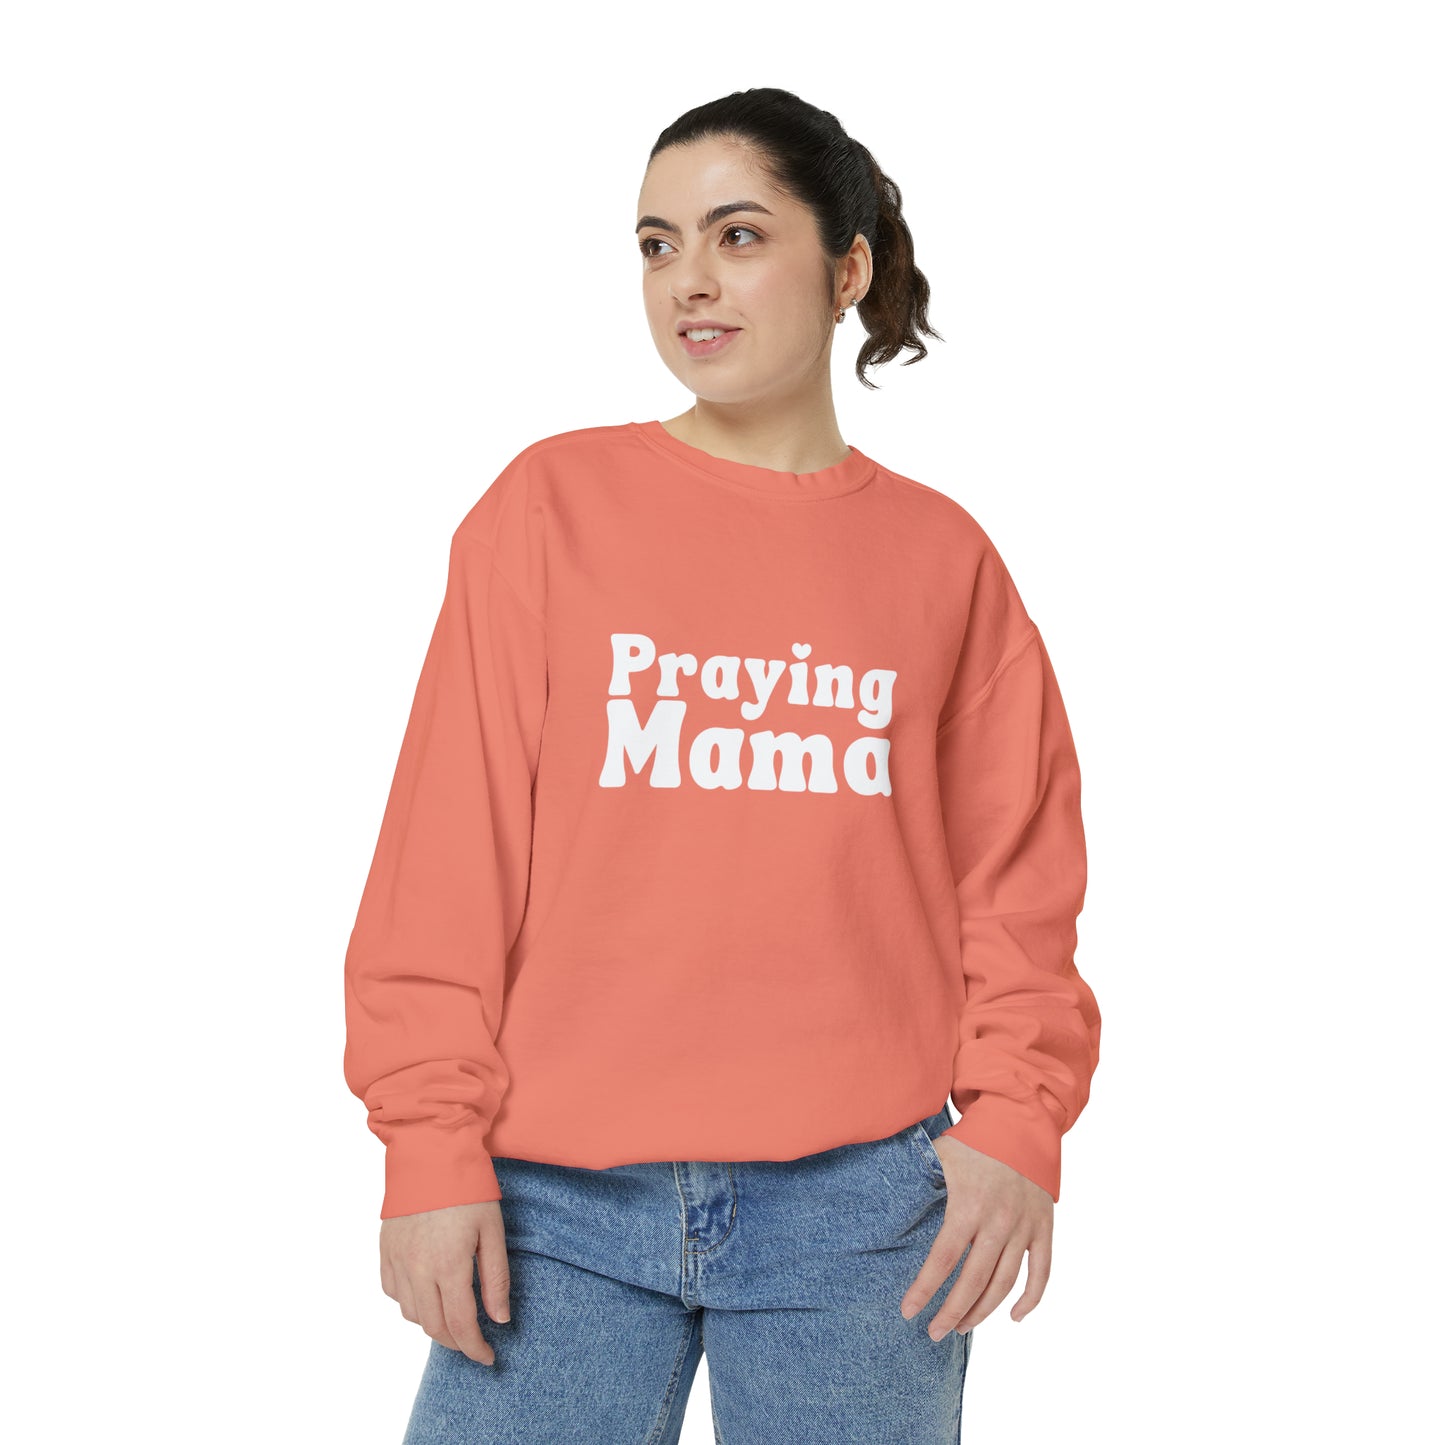 Praying Mama Sweatshirt